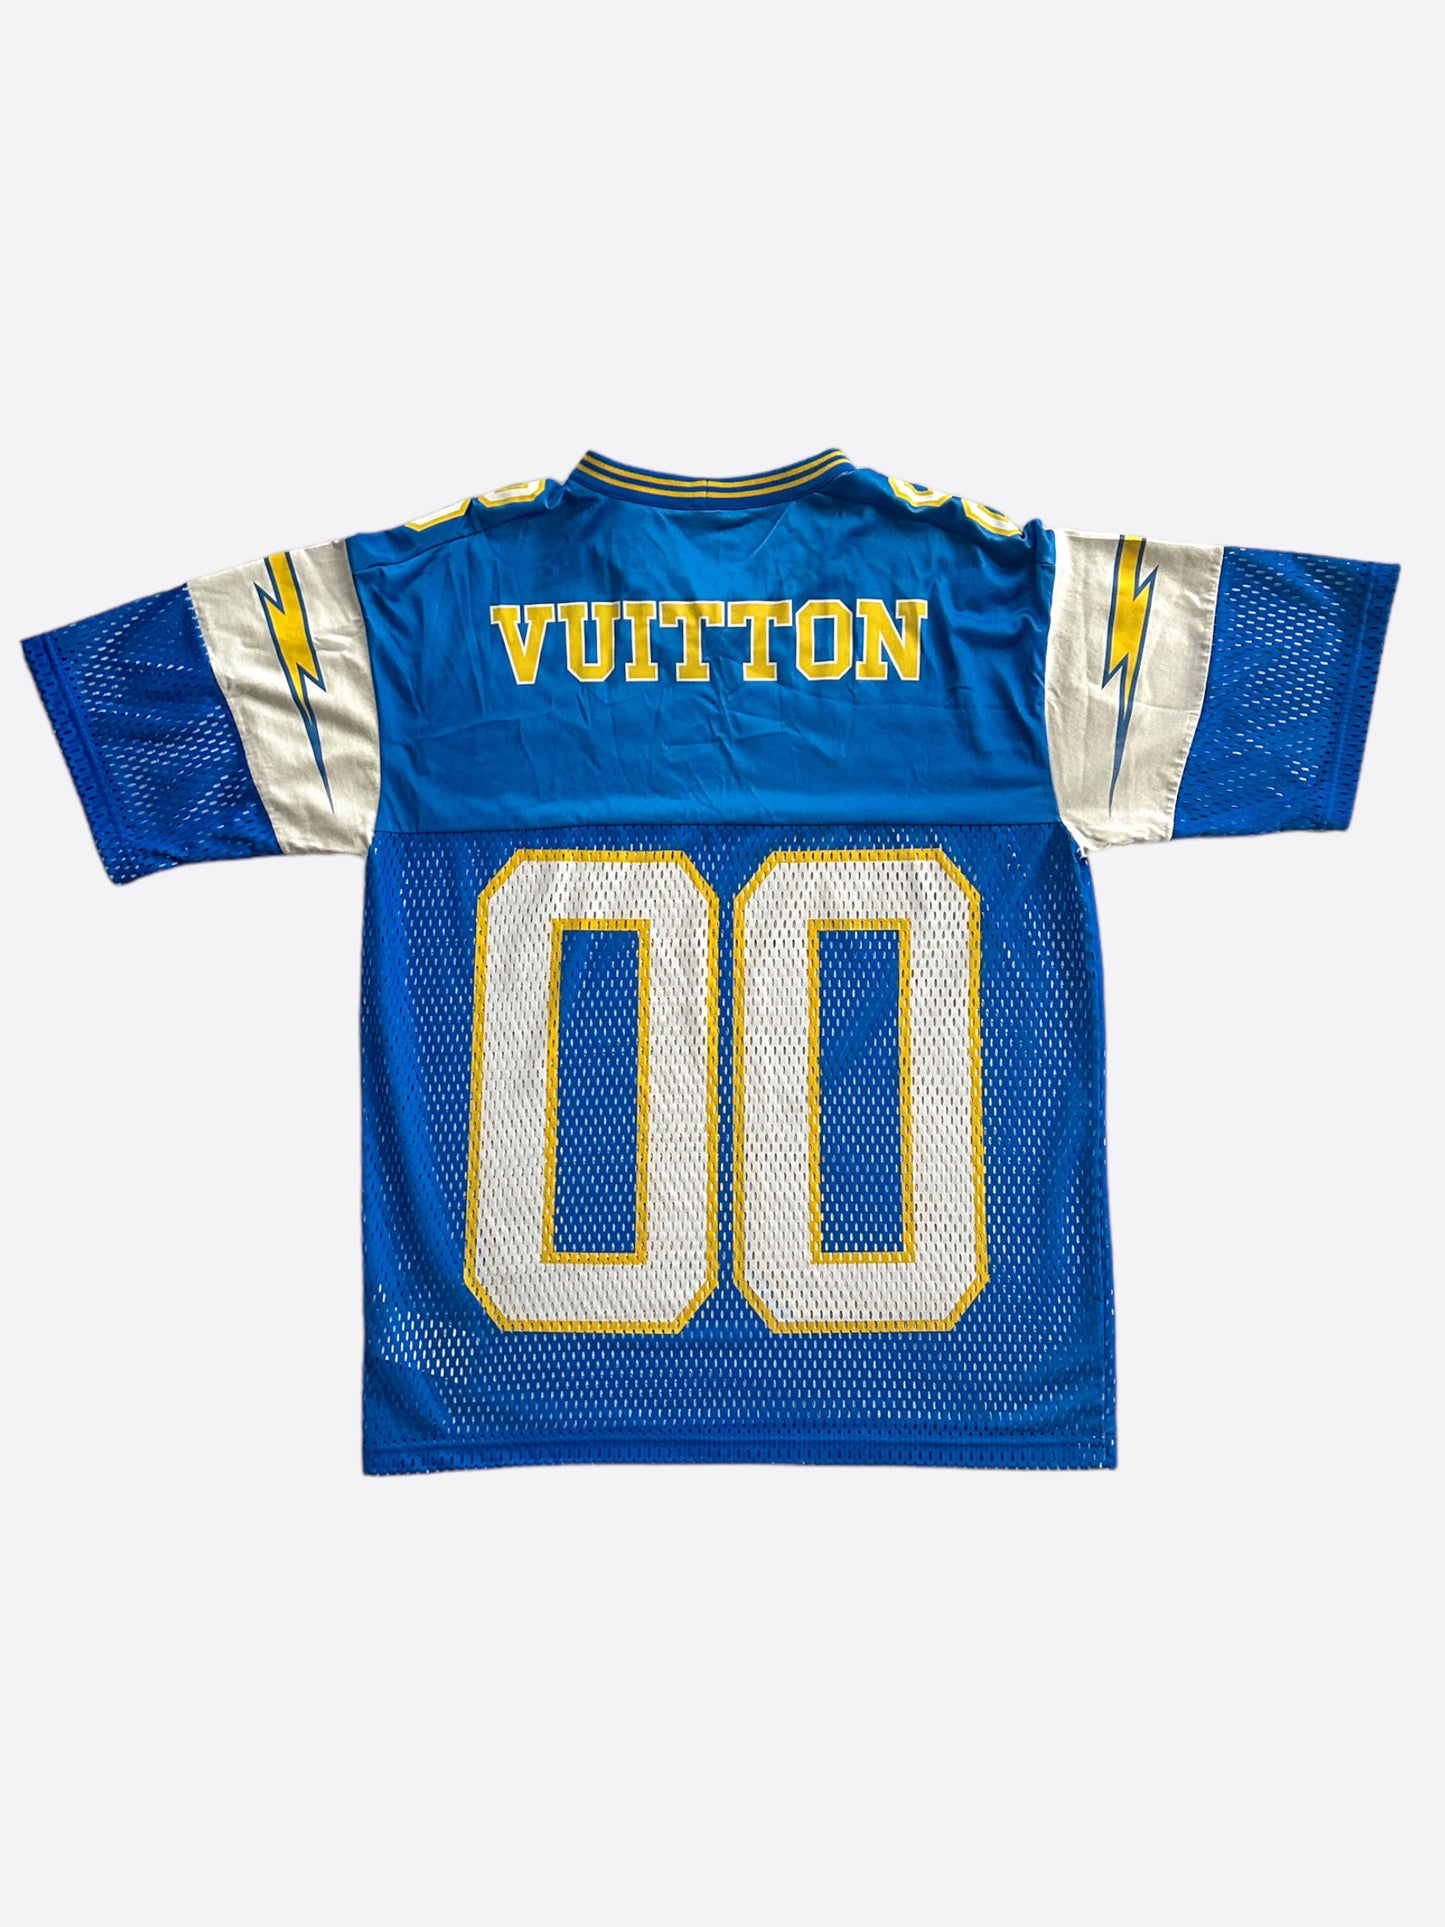 Louis Vuitton Blue & Yellow Mesh Football Jersey